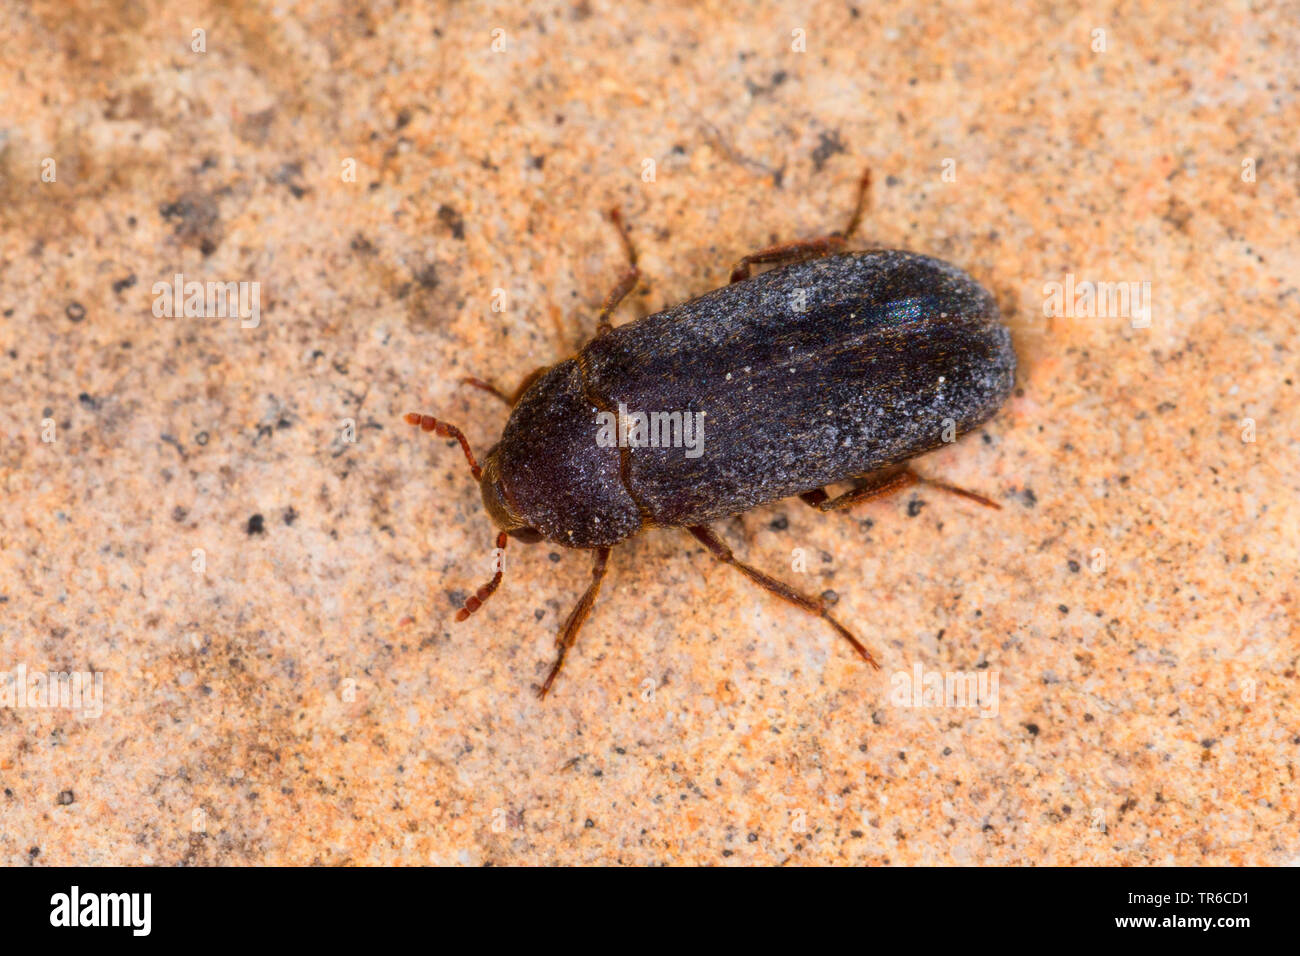 Dermestid beetle (Dermestes haemorrhoidalis, Dermestes gulo), imago, vue de dessus, Allemagne Banque D'Images